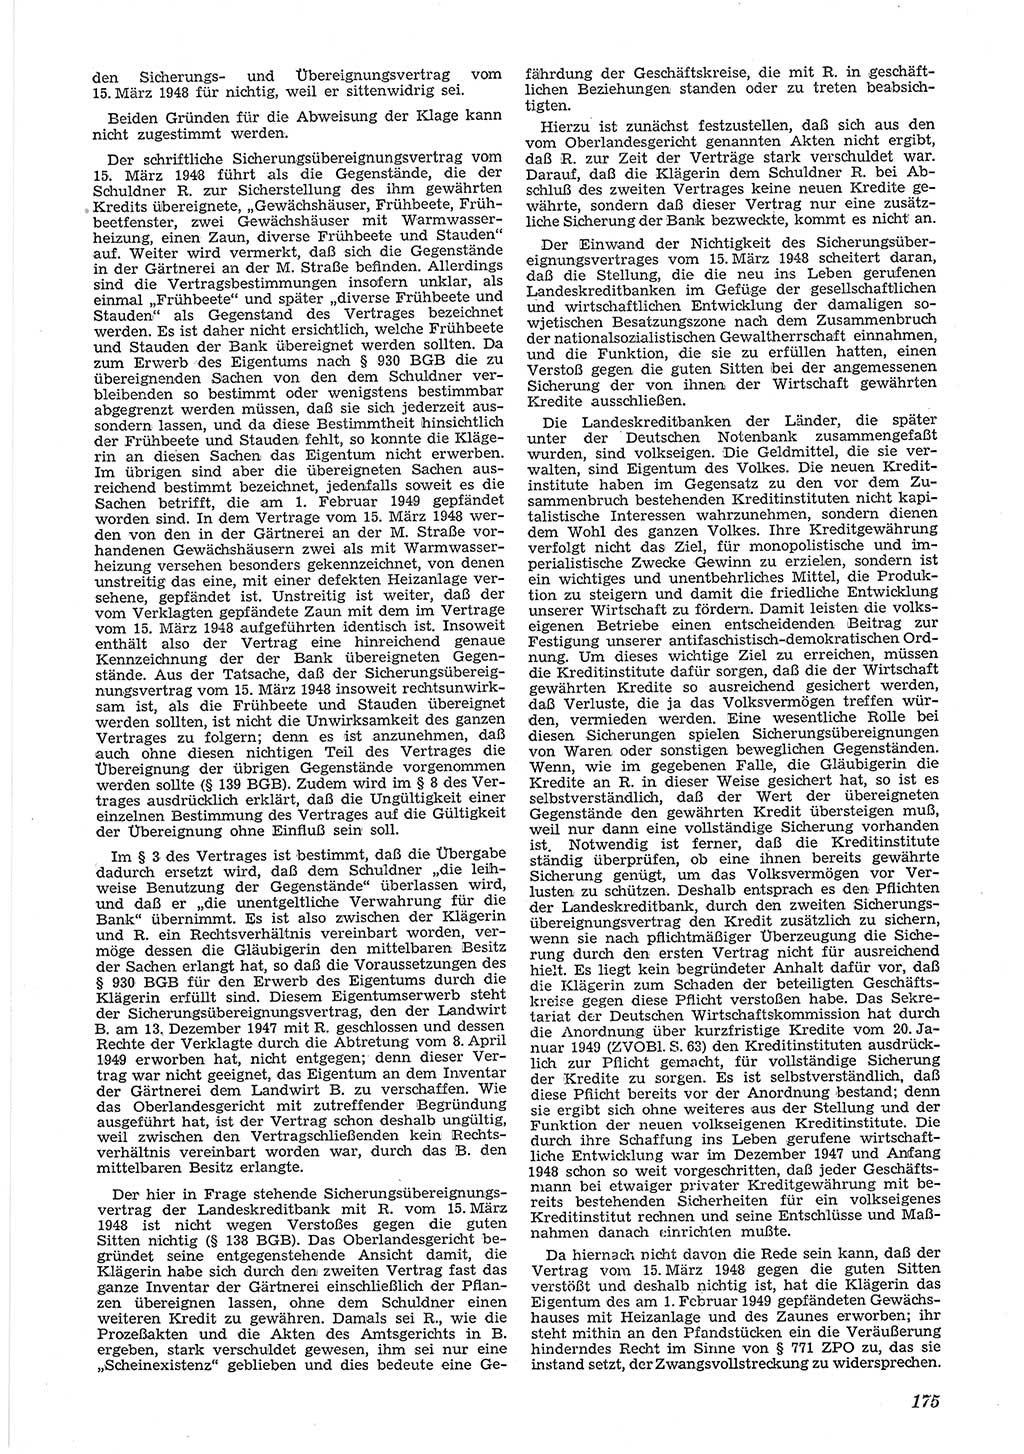 Neue Justiz (NJ), Zeitschrift für Recht und Rechtswissenschaft [Deutsche Demokratische Republik (DDR)], 6. Jahrgang 1952, Seite 175 (NJ DDR 1952, S. 175)